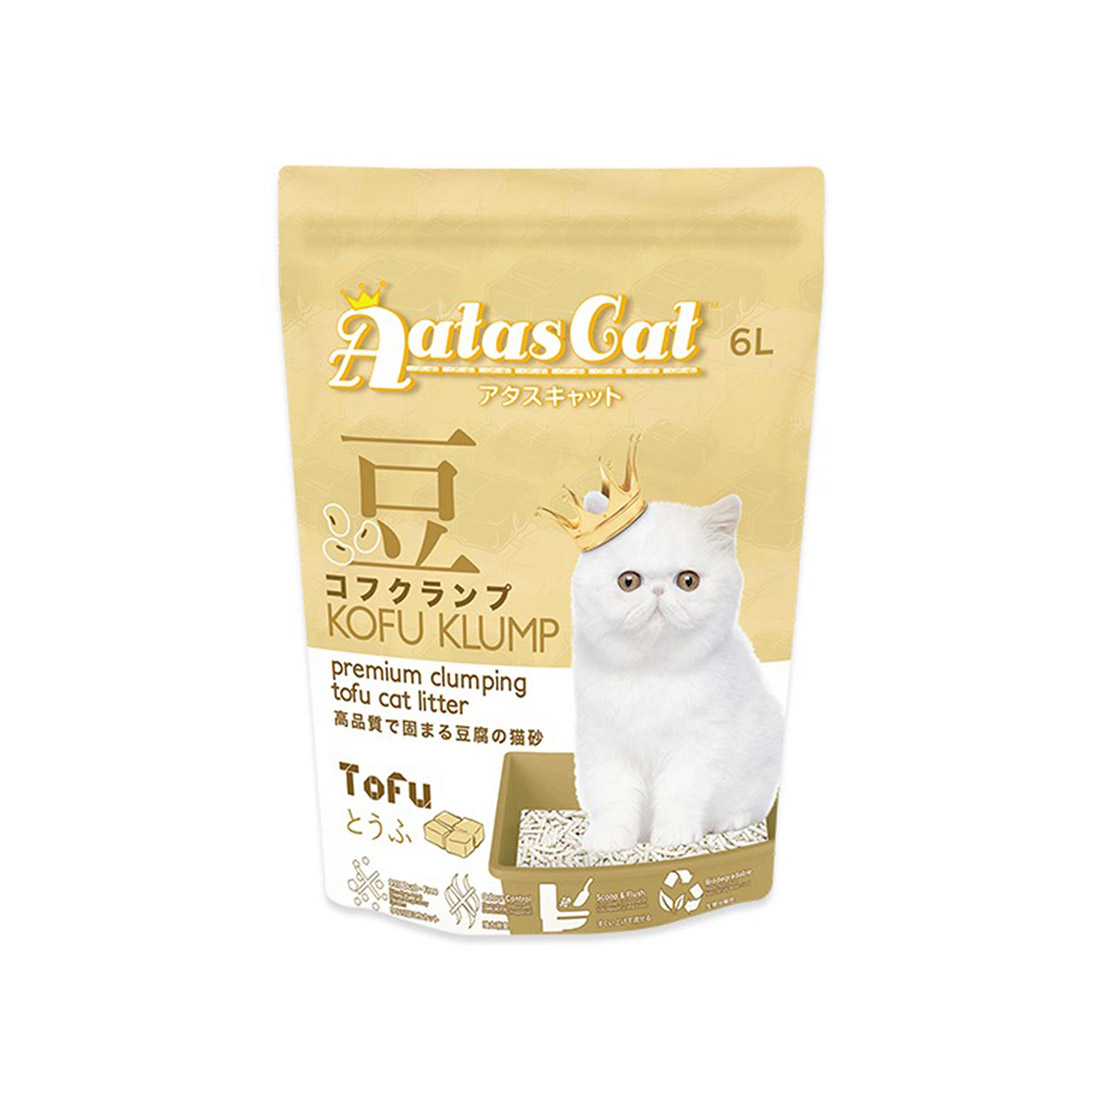 Aatas Cat Tofu Cat Litter Kofu Klump Tofu 6l